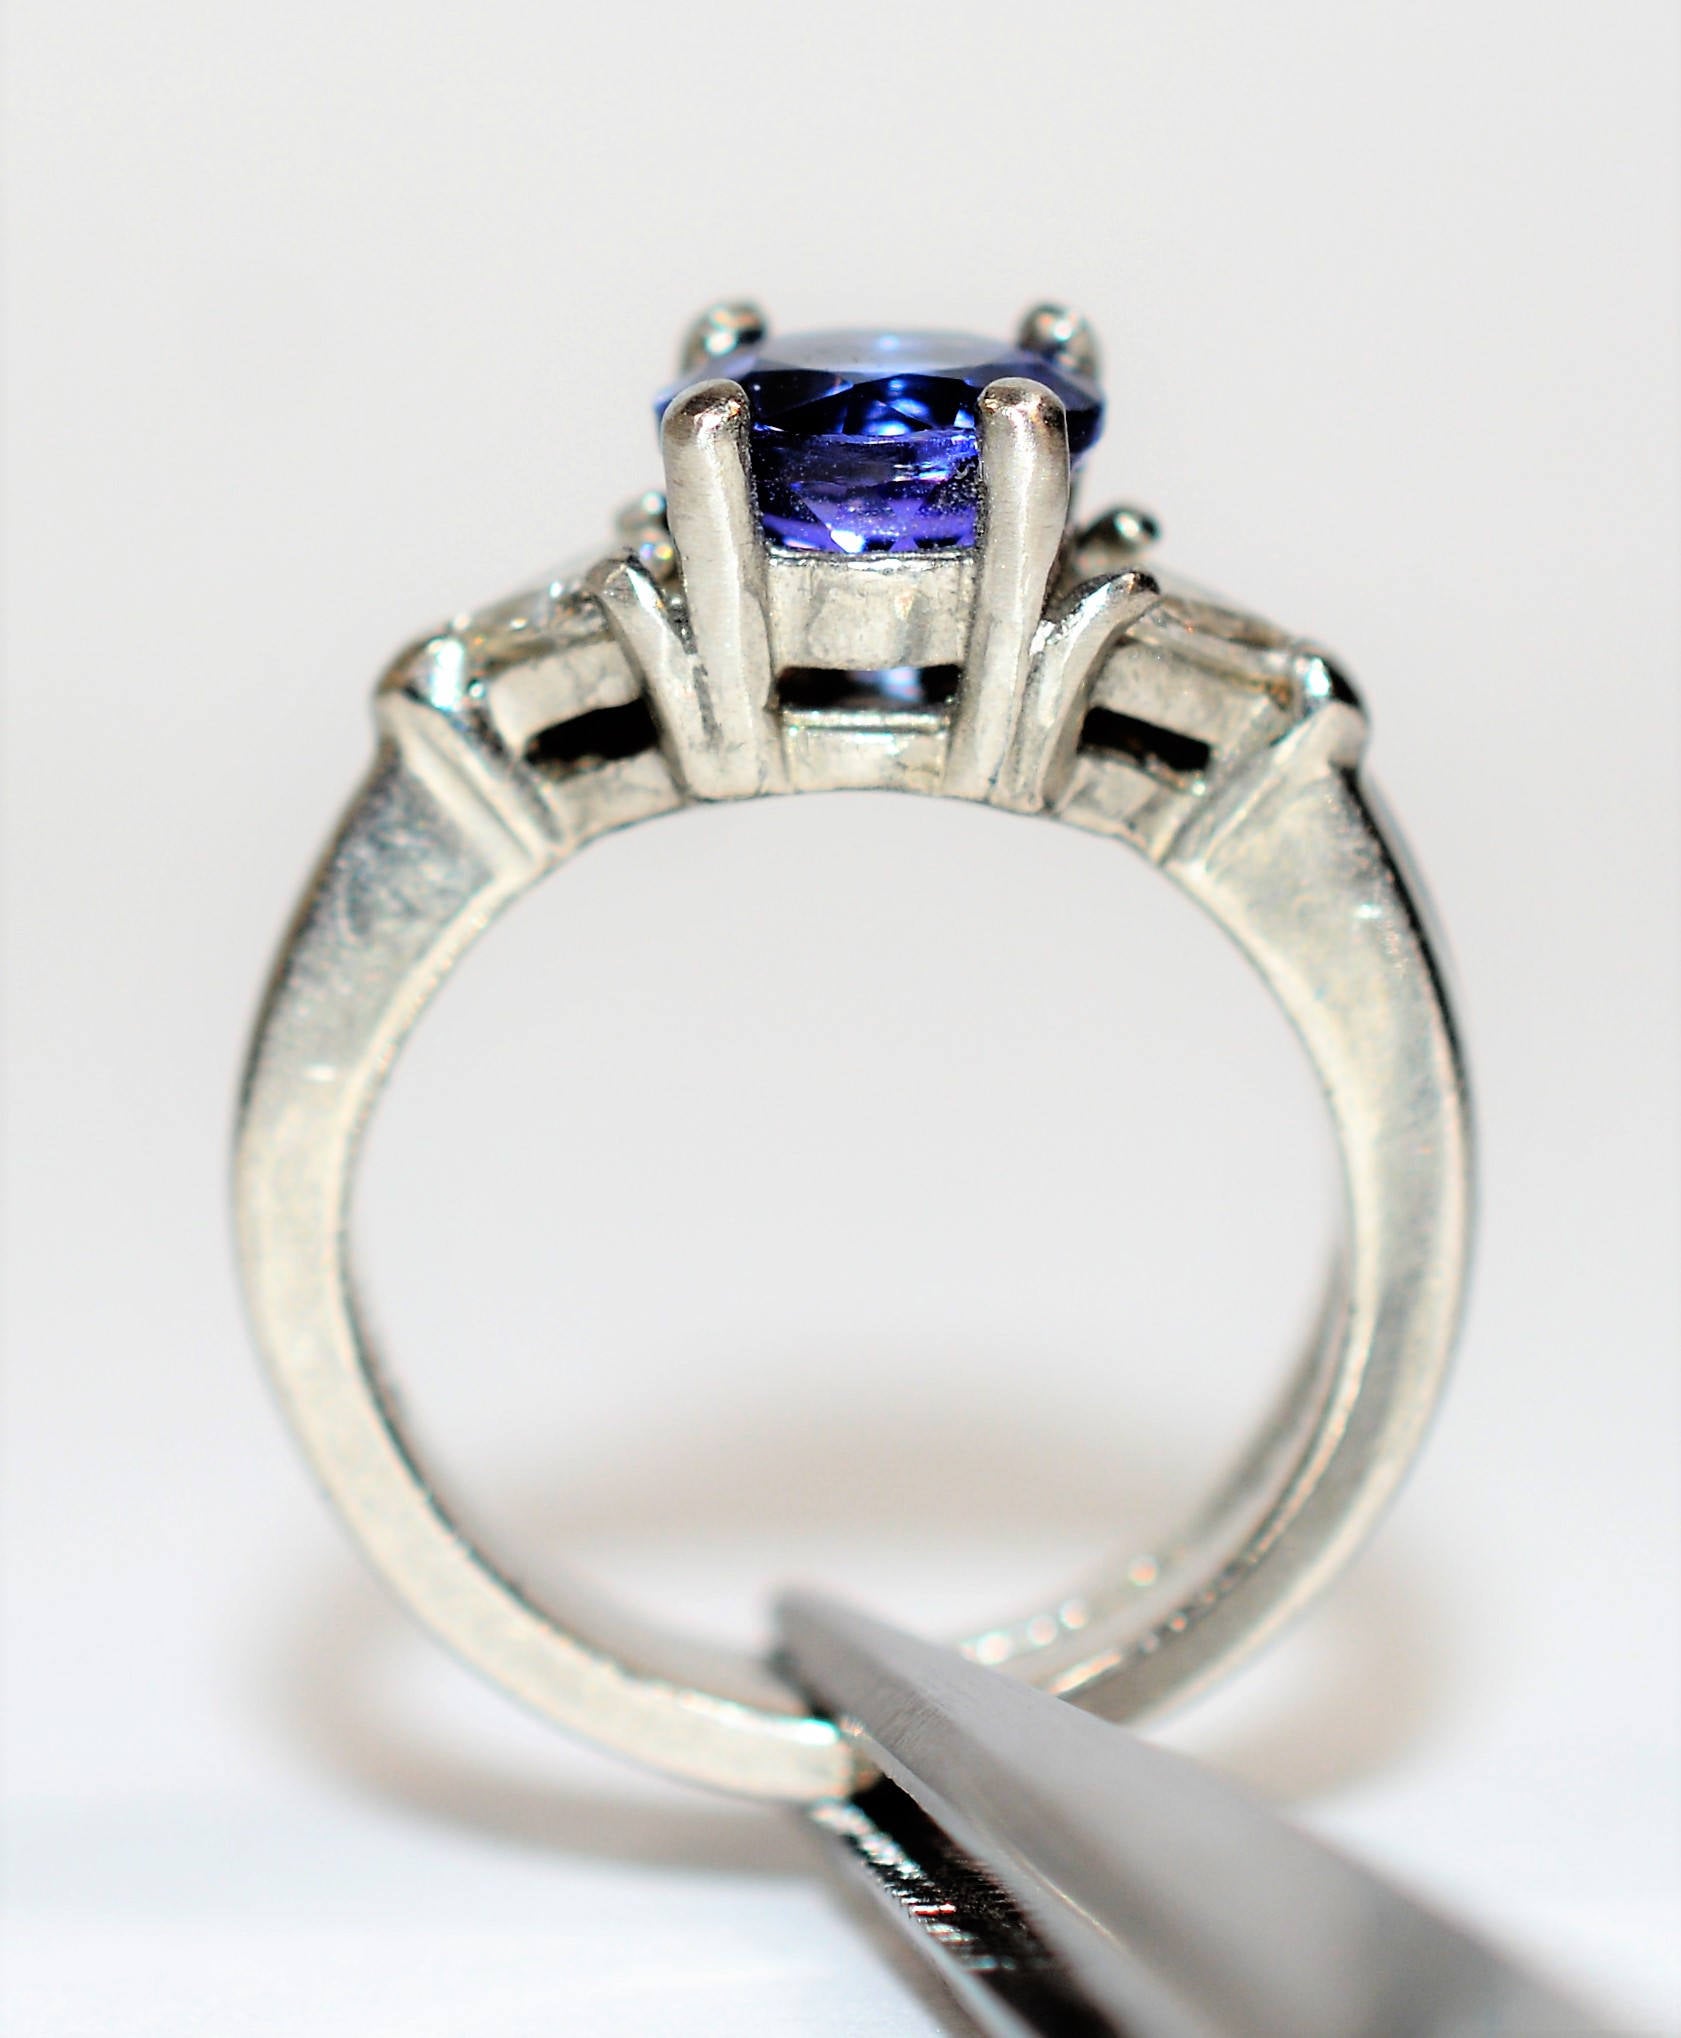 Natural D’Block Tanzanite & Diamond Ring Wedding Bridal Set Solid Platinum 2.34tcw Gemstone Ring Engagement Ring Wedding Band Tanzanite Ring